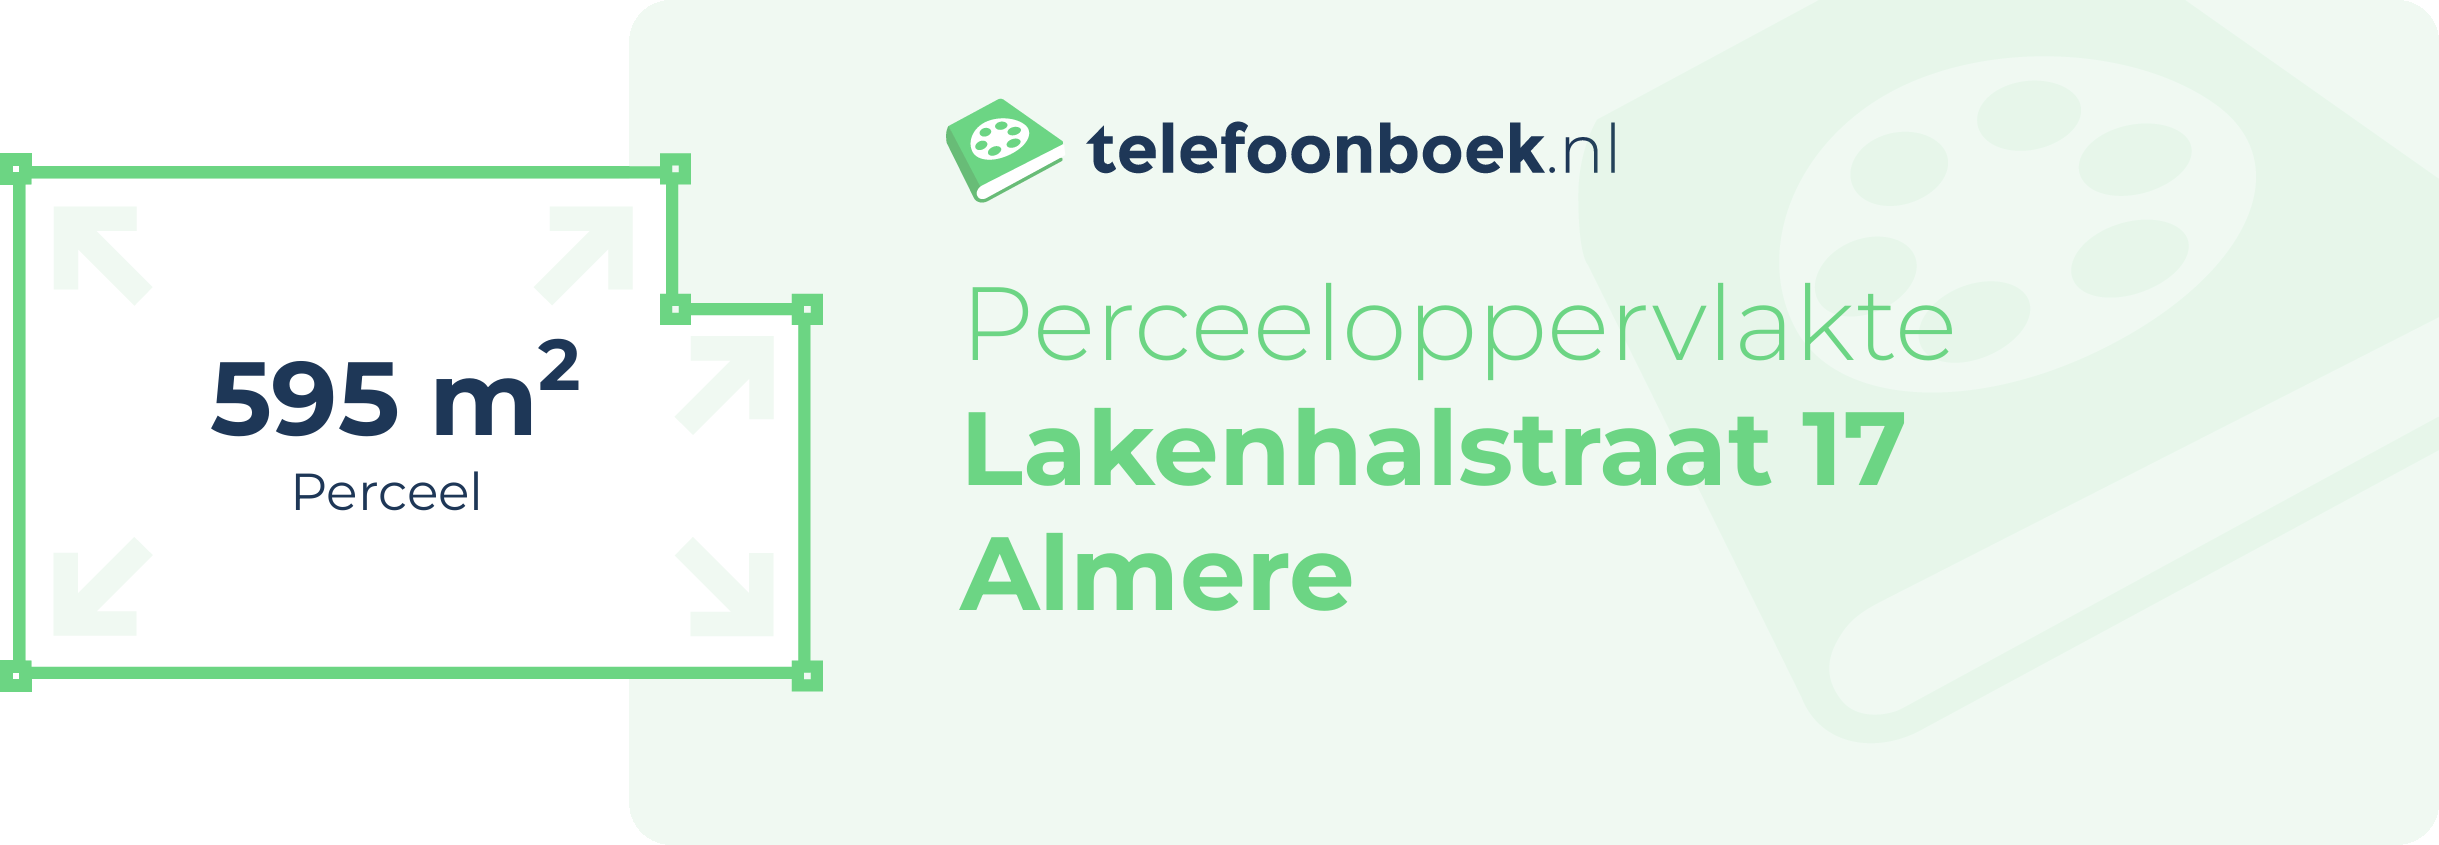 Perceeloppervlakte Lakenhalstraat 17 Almere